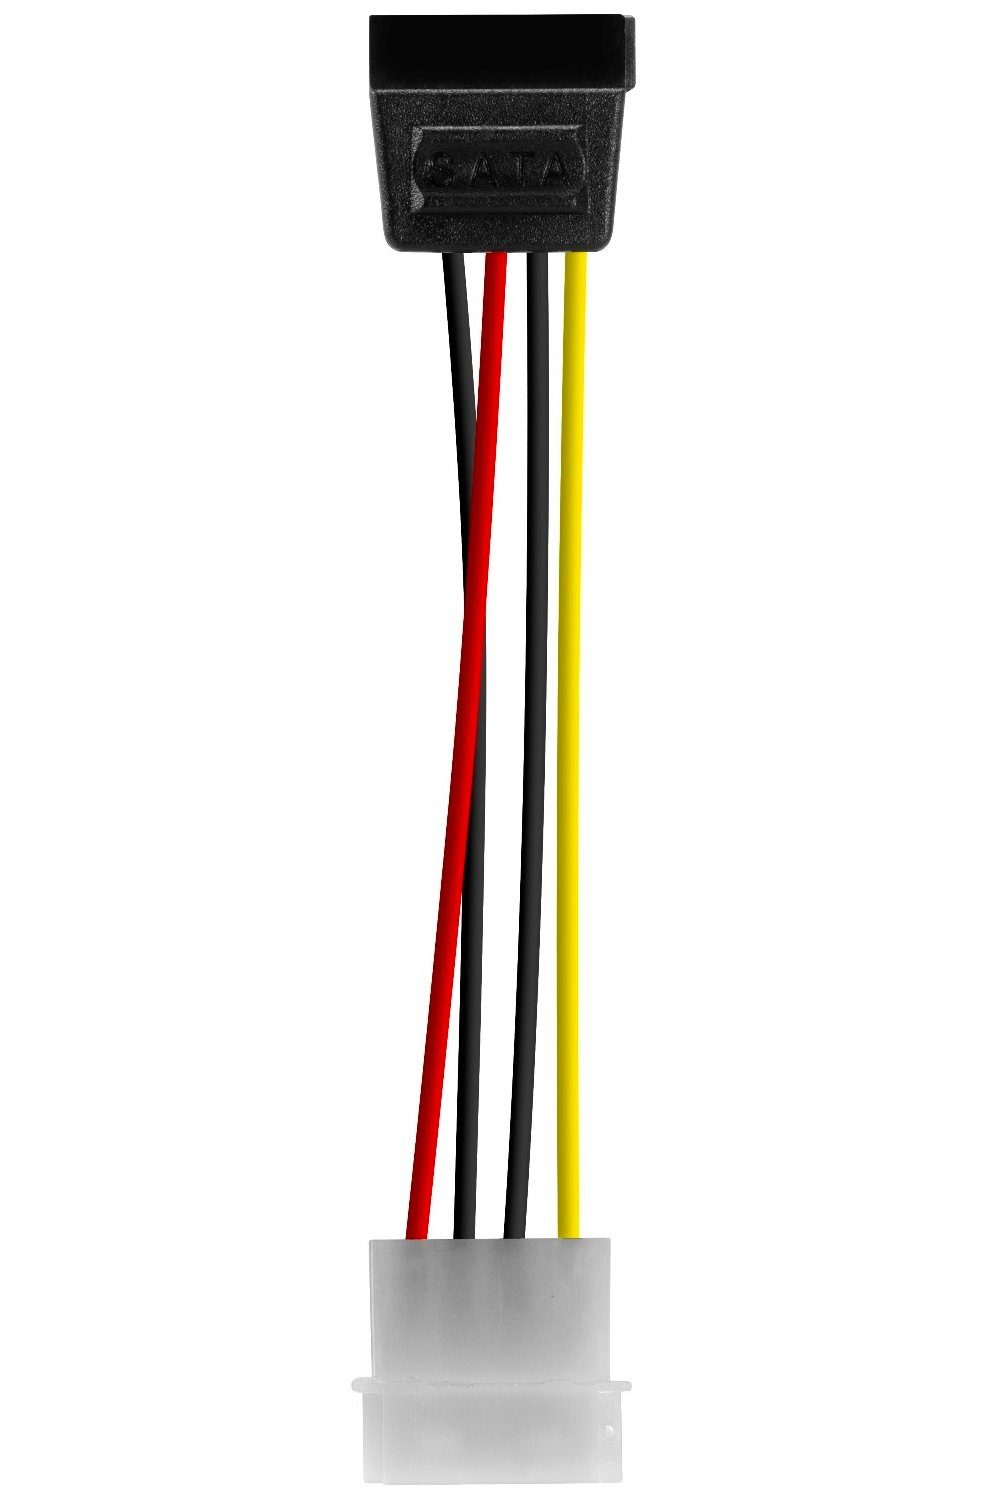 PATA/IDE-Molex-Stromstecker,SATA-Stromstecker PC Adapter 15-polig IDE Stecker Stromkabel, SATA Strom-Kabel Speedlink 5,25" Speedlink zu